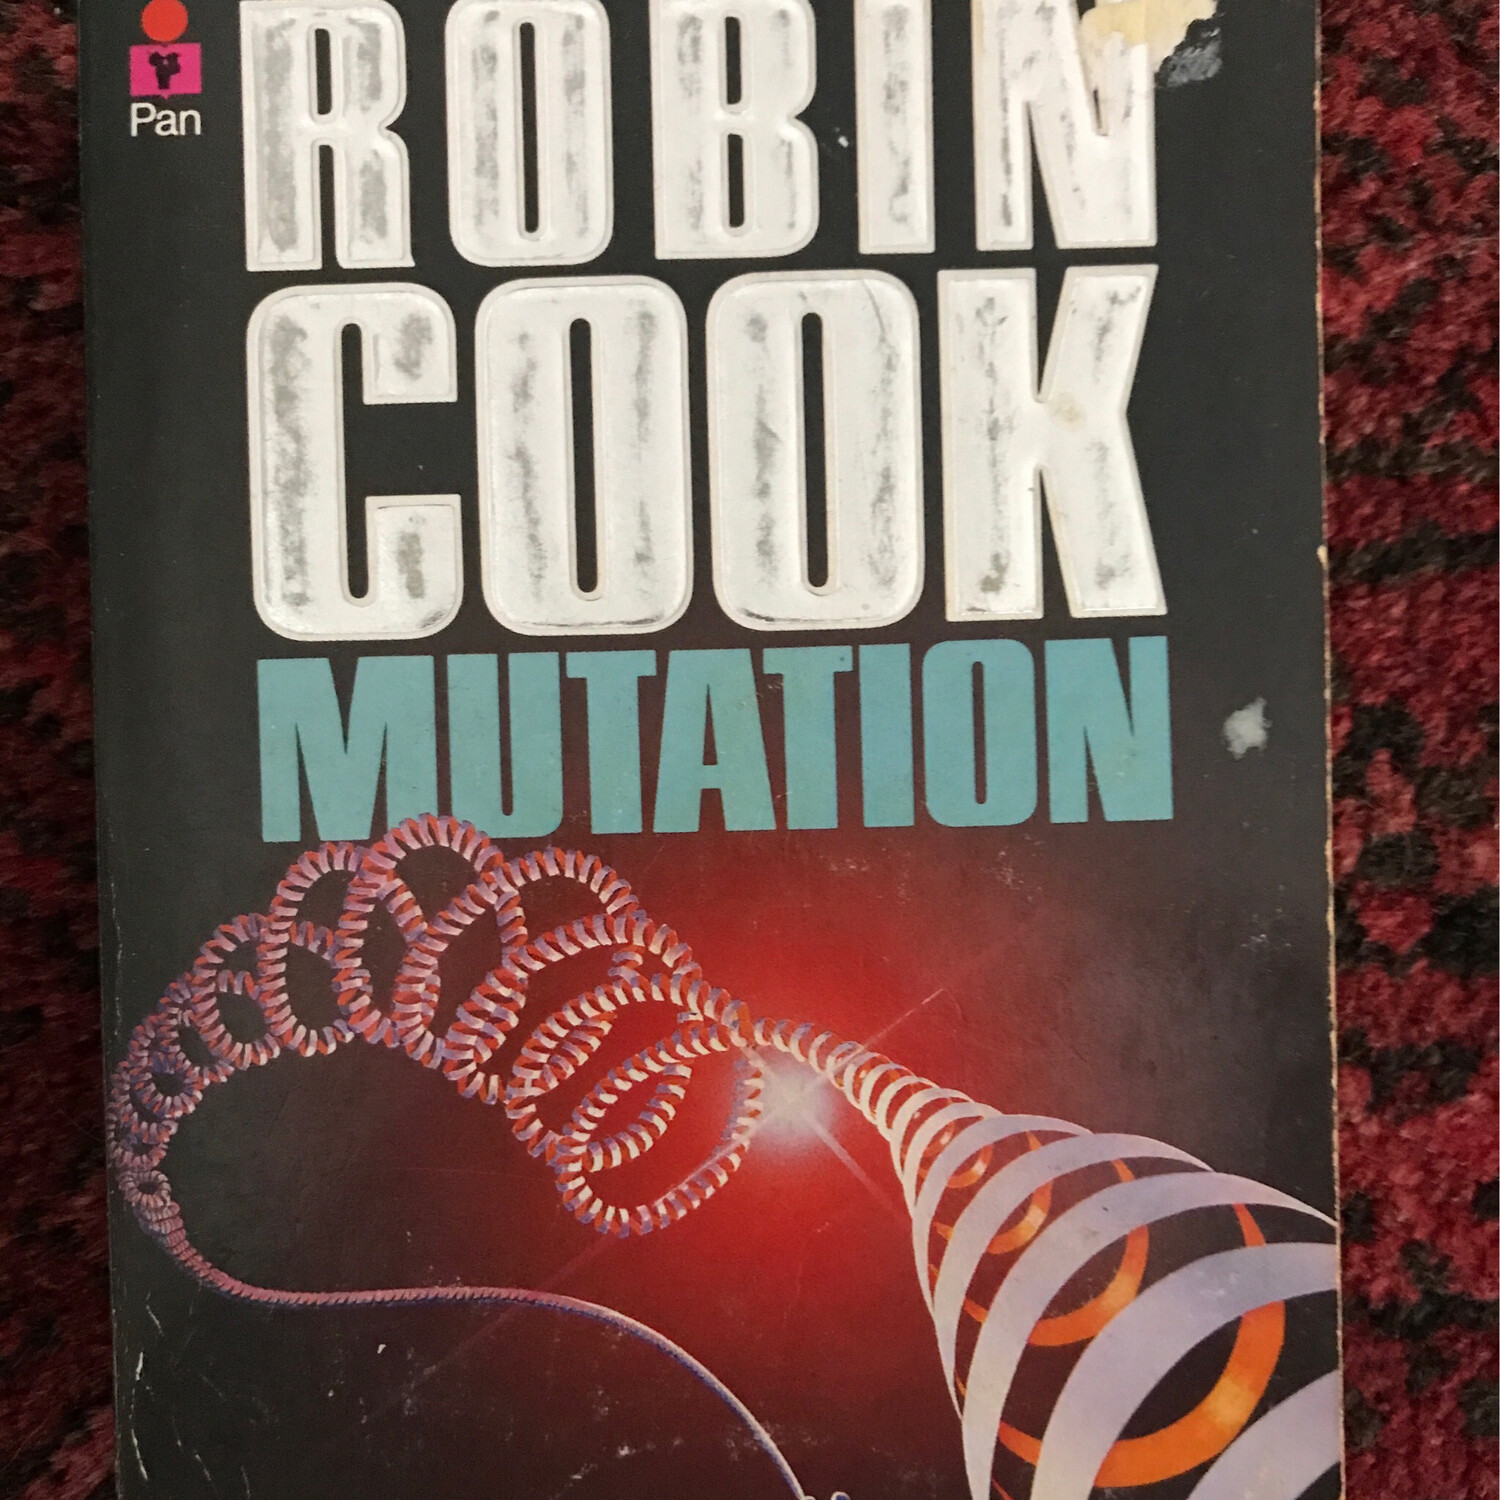 Mutation, Robin Cook